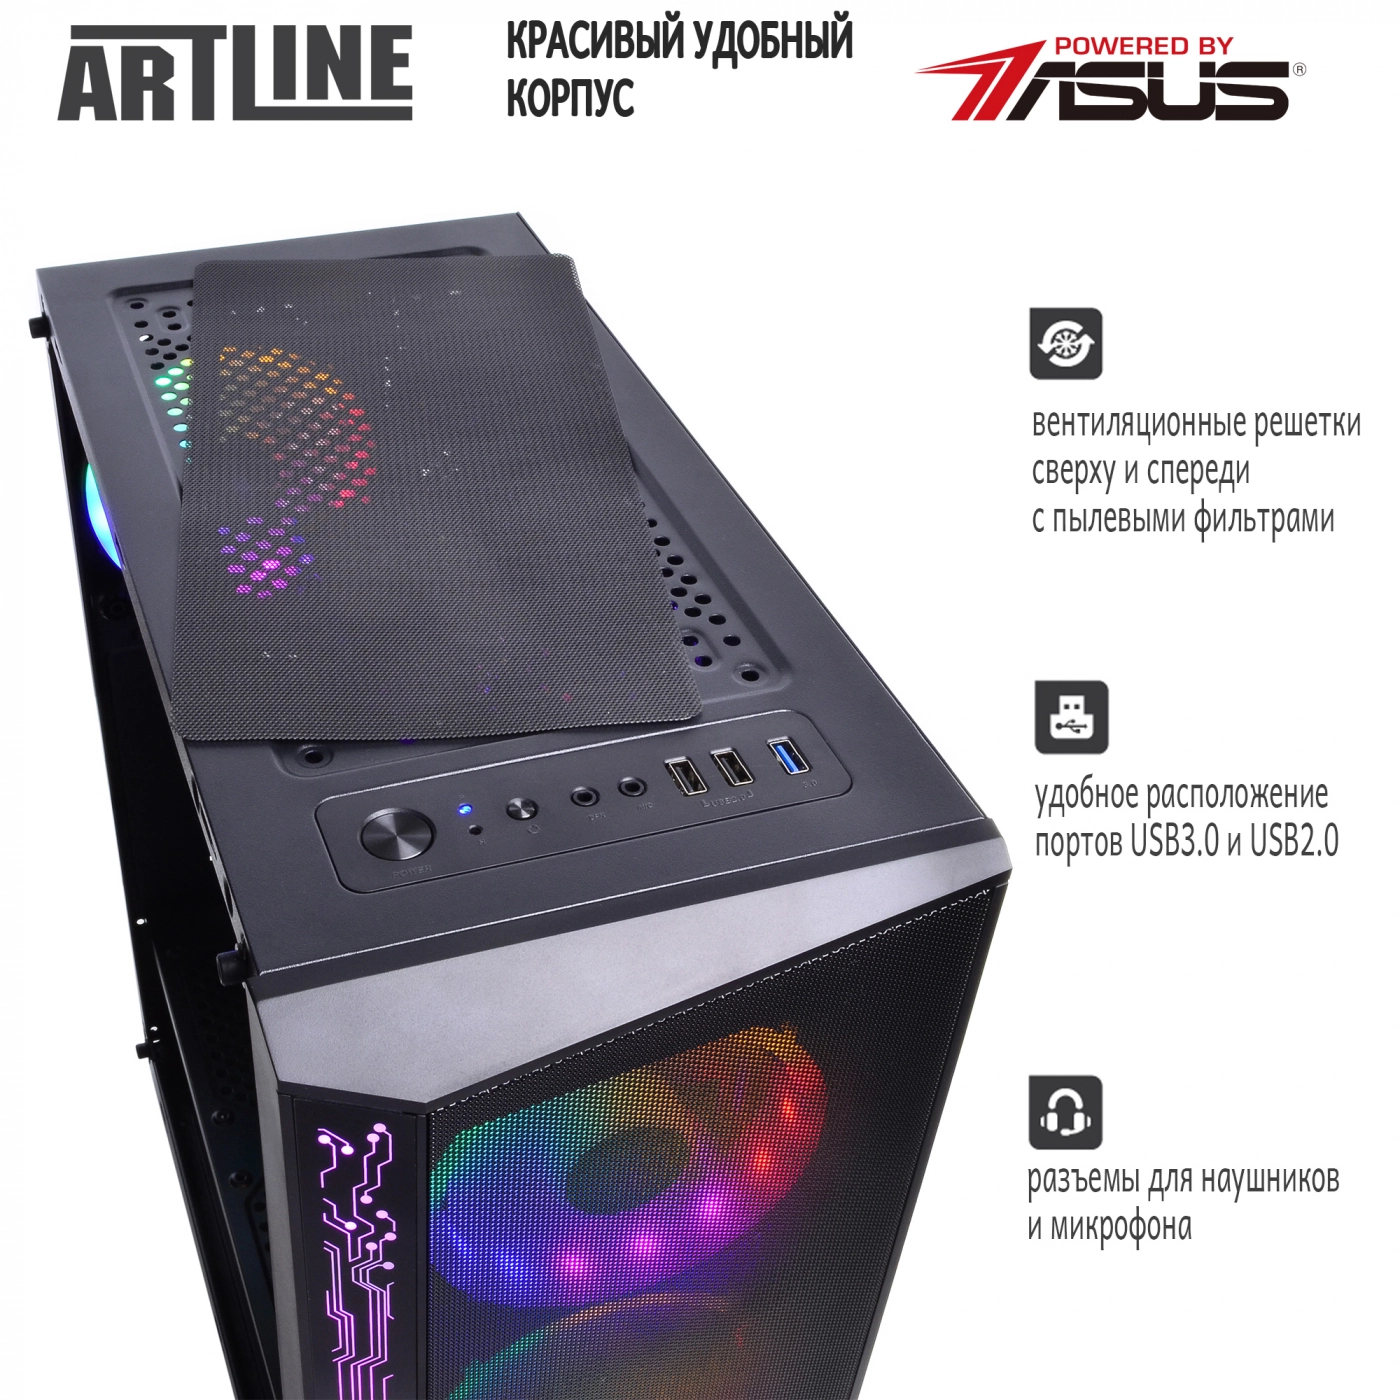 Купить Компьютер ARTLINE Gaming X35v35 - фото 4